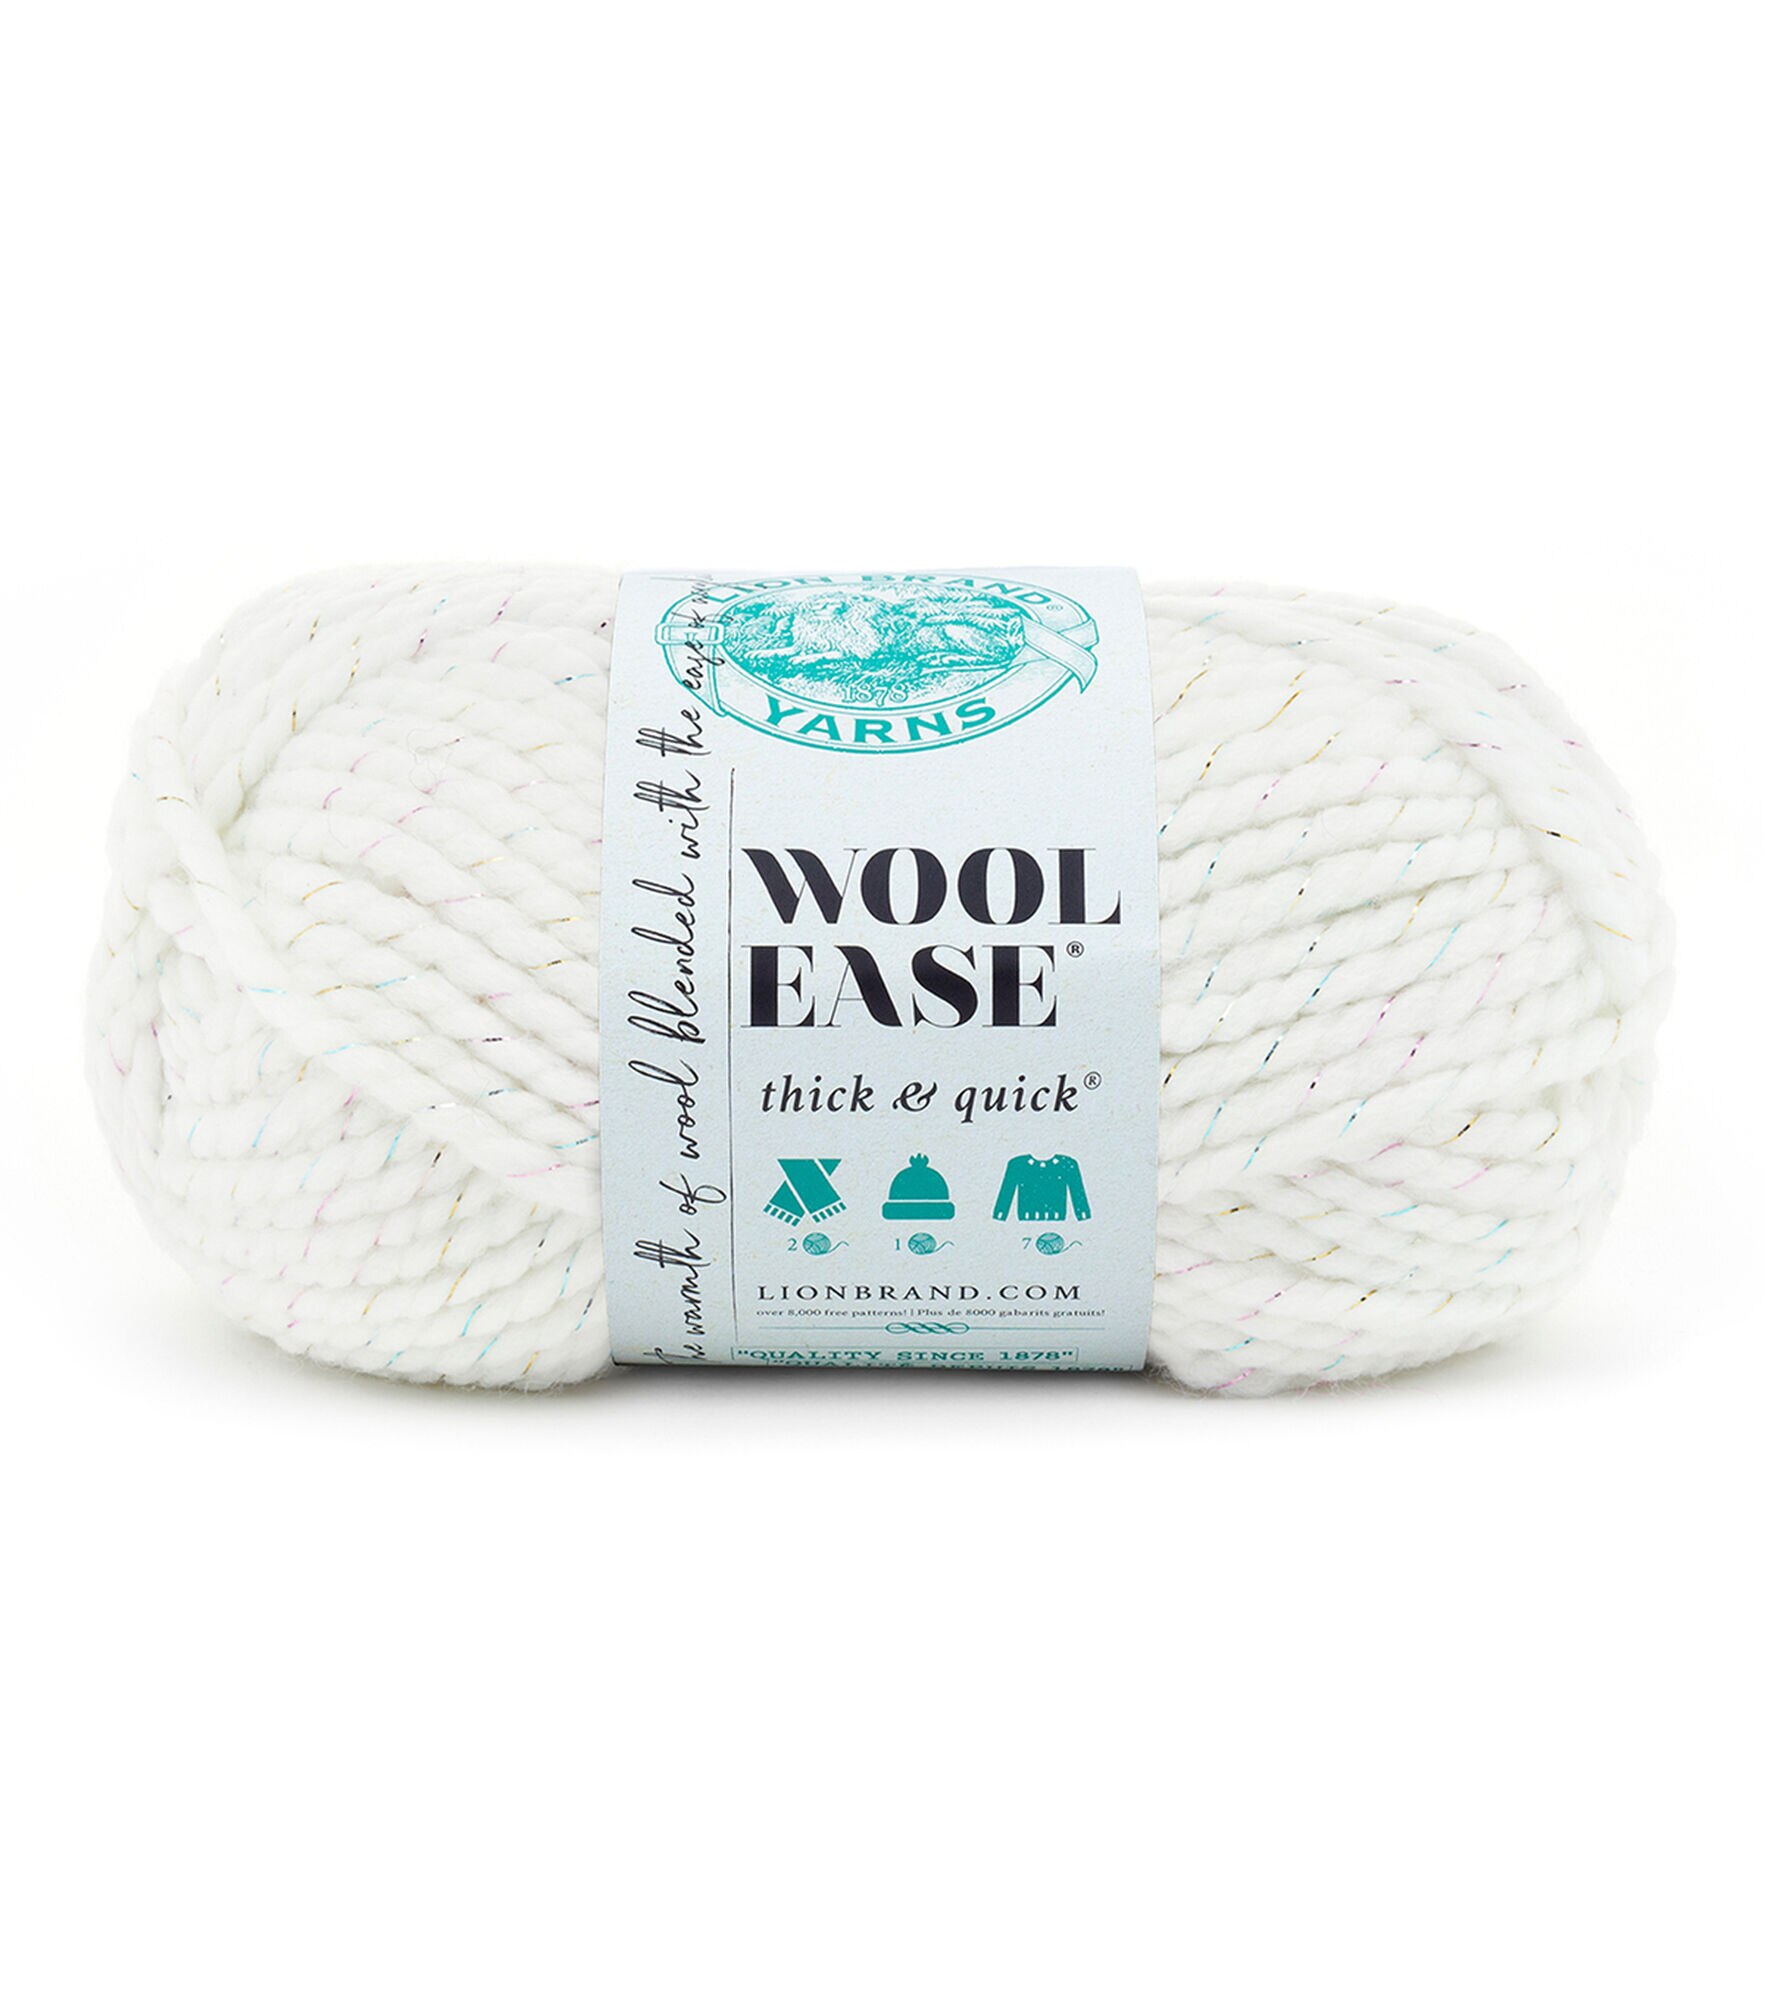 Truboo Yarn  Lion brand yarn, Yarn, Lion brand wool ease